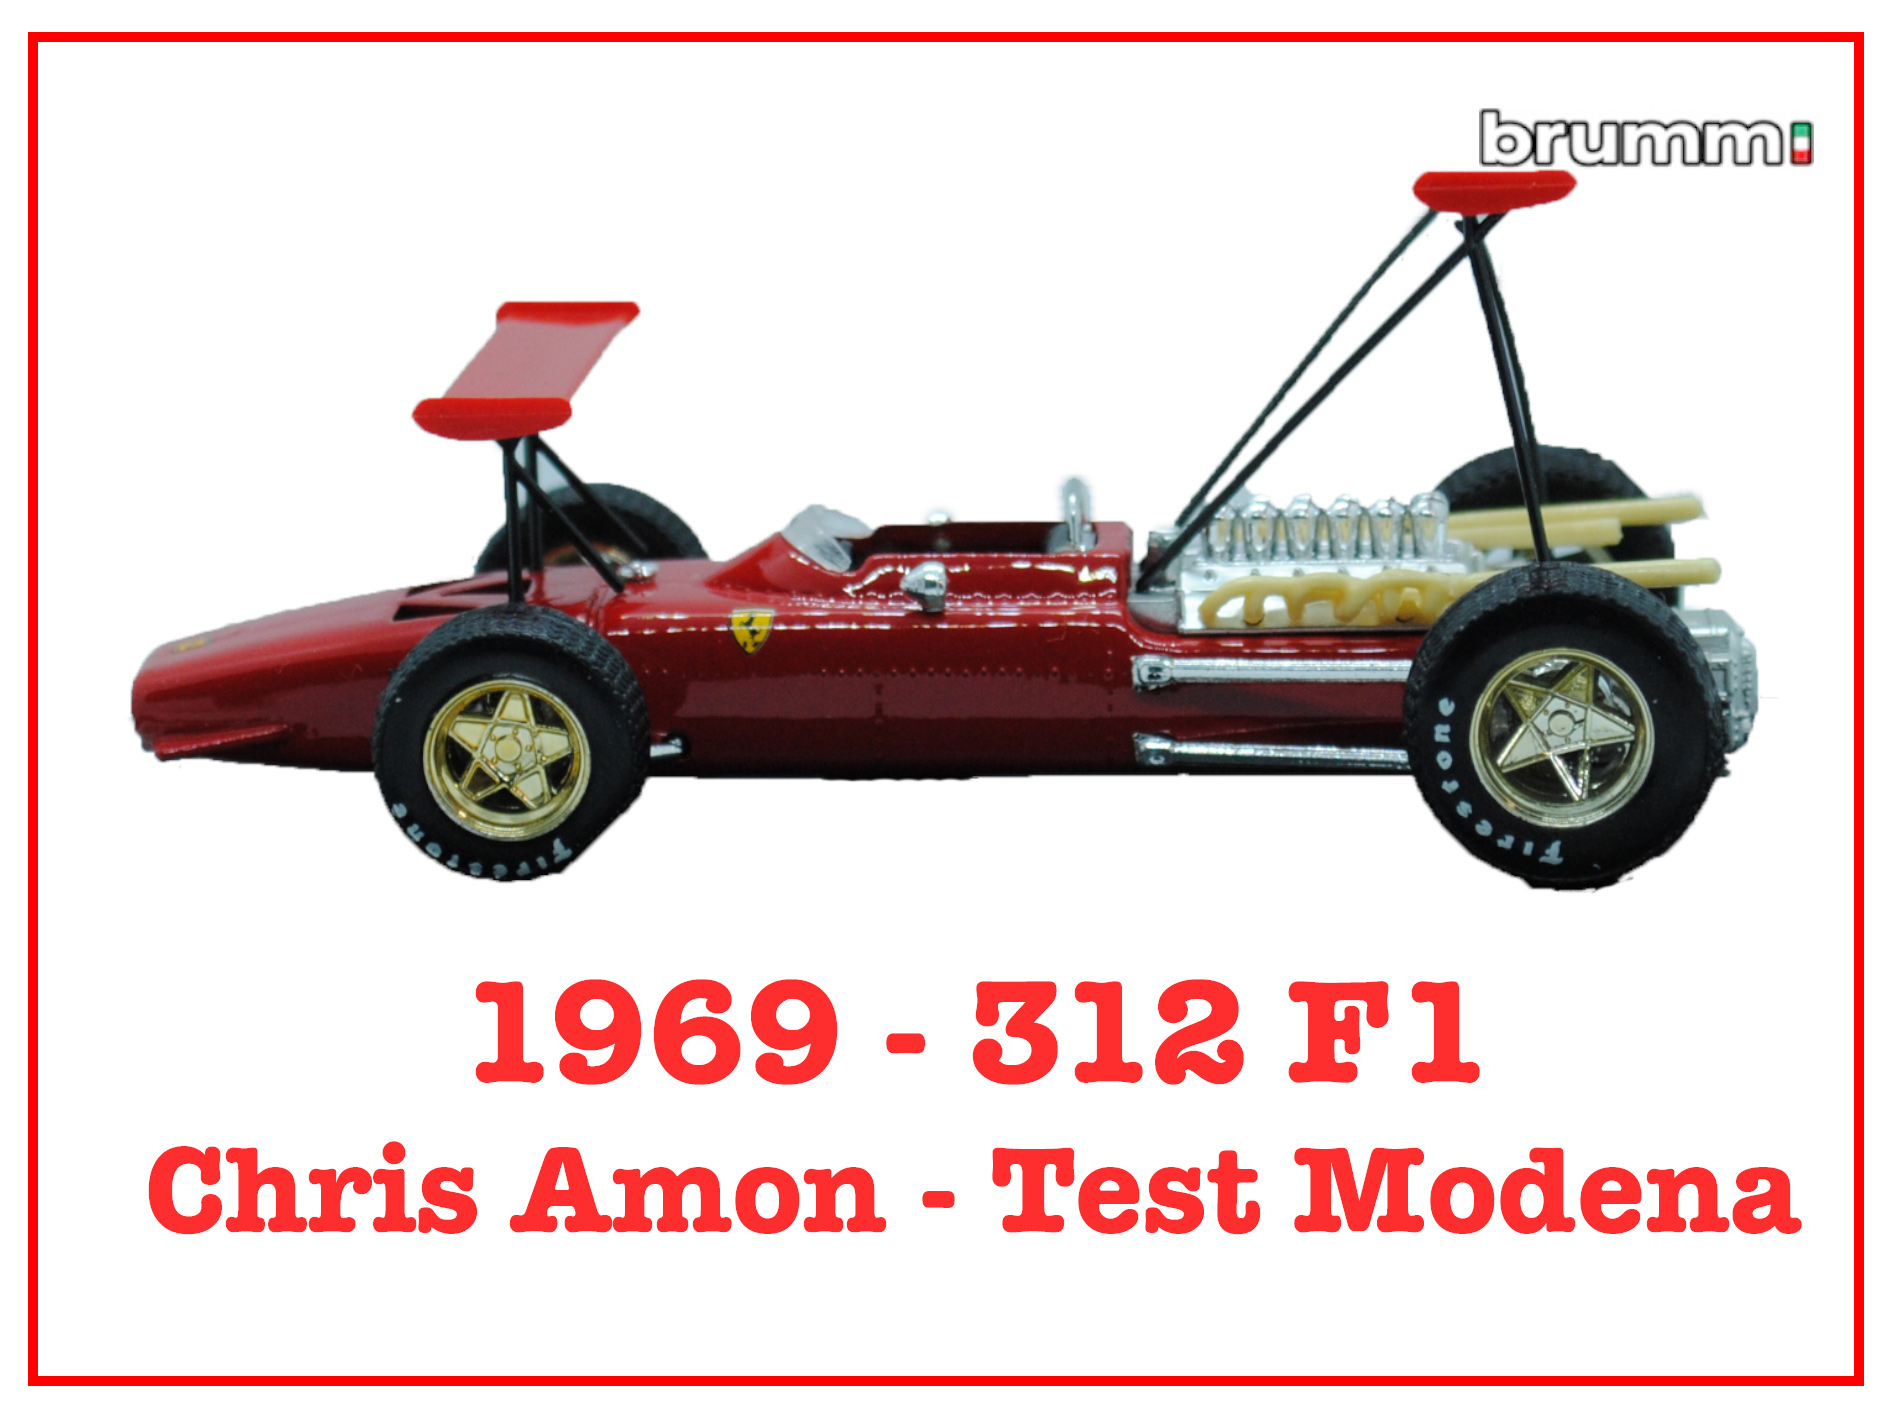 Immagine 312 F1 Chris Amon Test Modena Doppio Alettone